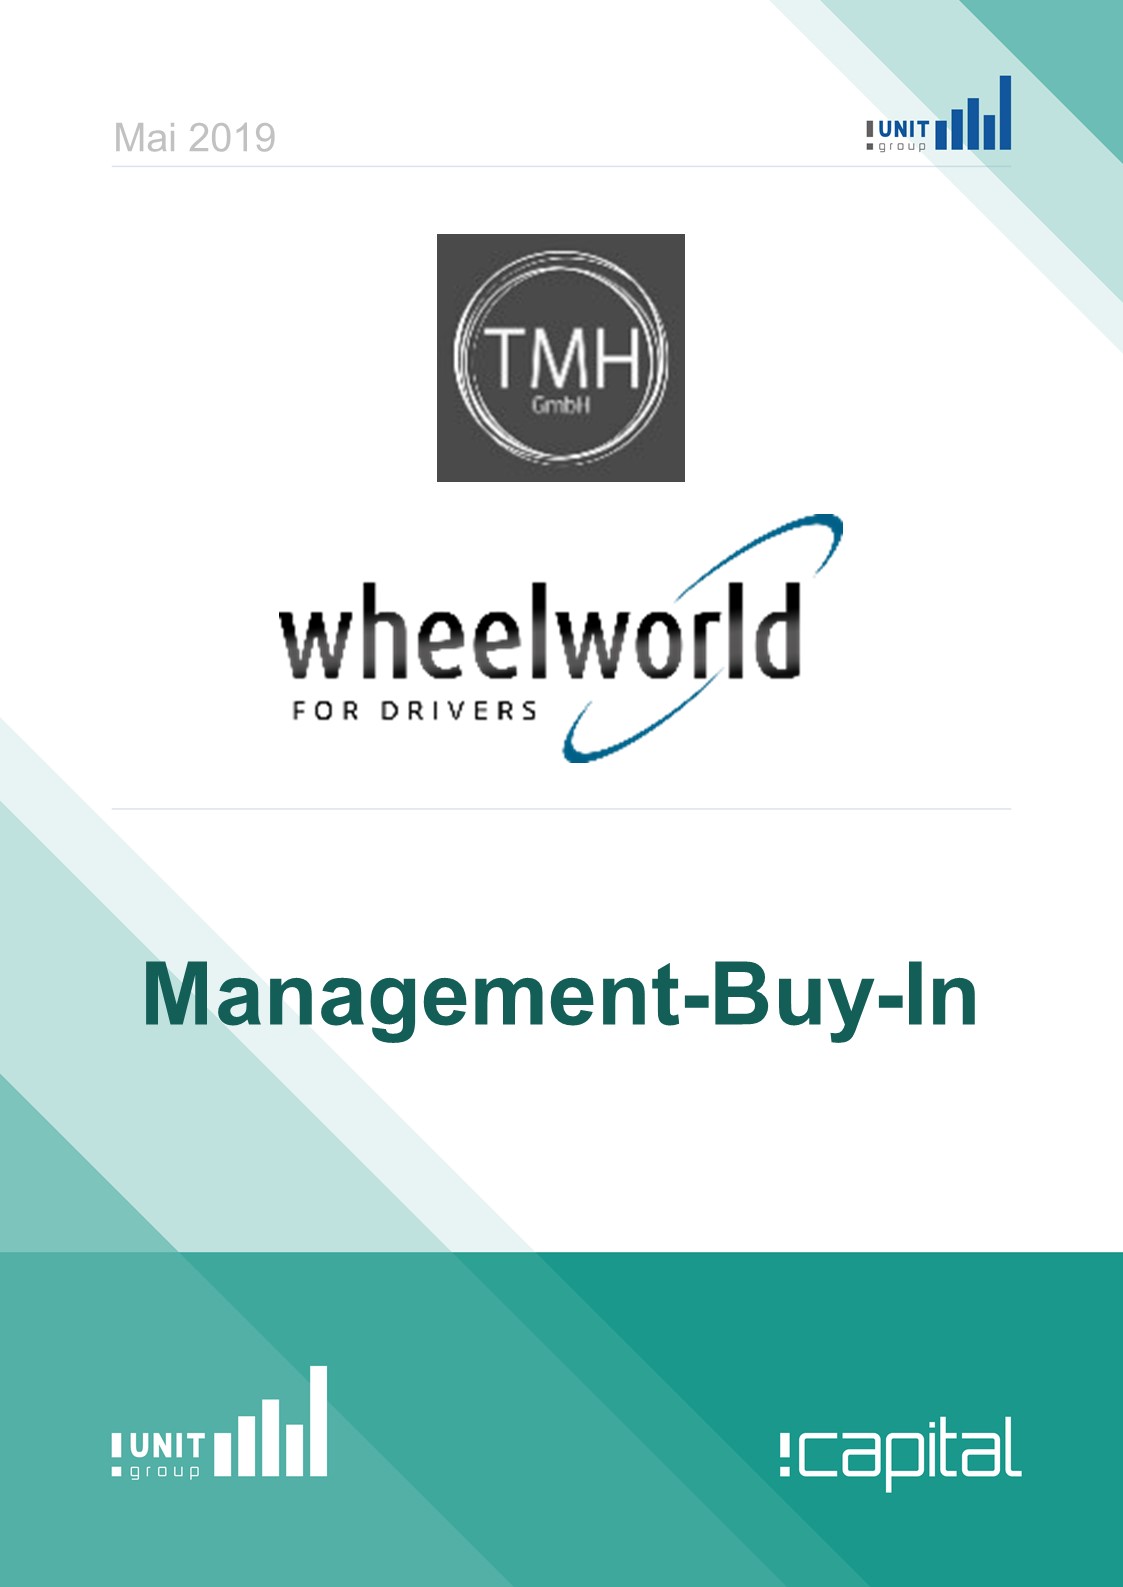 thm und wheelworld